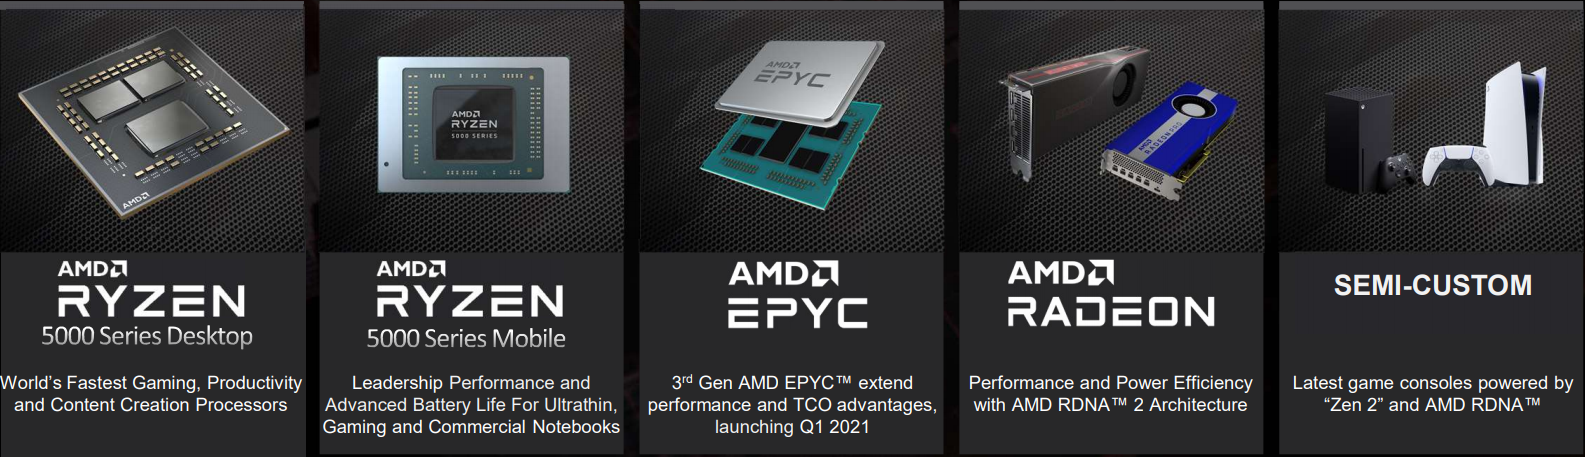 CPU, GPU, rozwiązania serwerowe i podzespoły napędzające PlayStation 5 i Xbox Serie X/S to składowe świetnego wyniku finansowego AMD w 2020 roku (źródło: AMD)